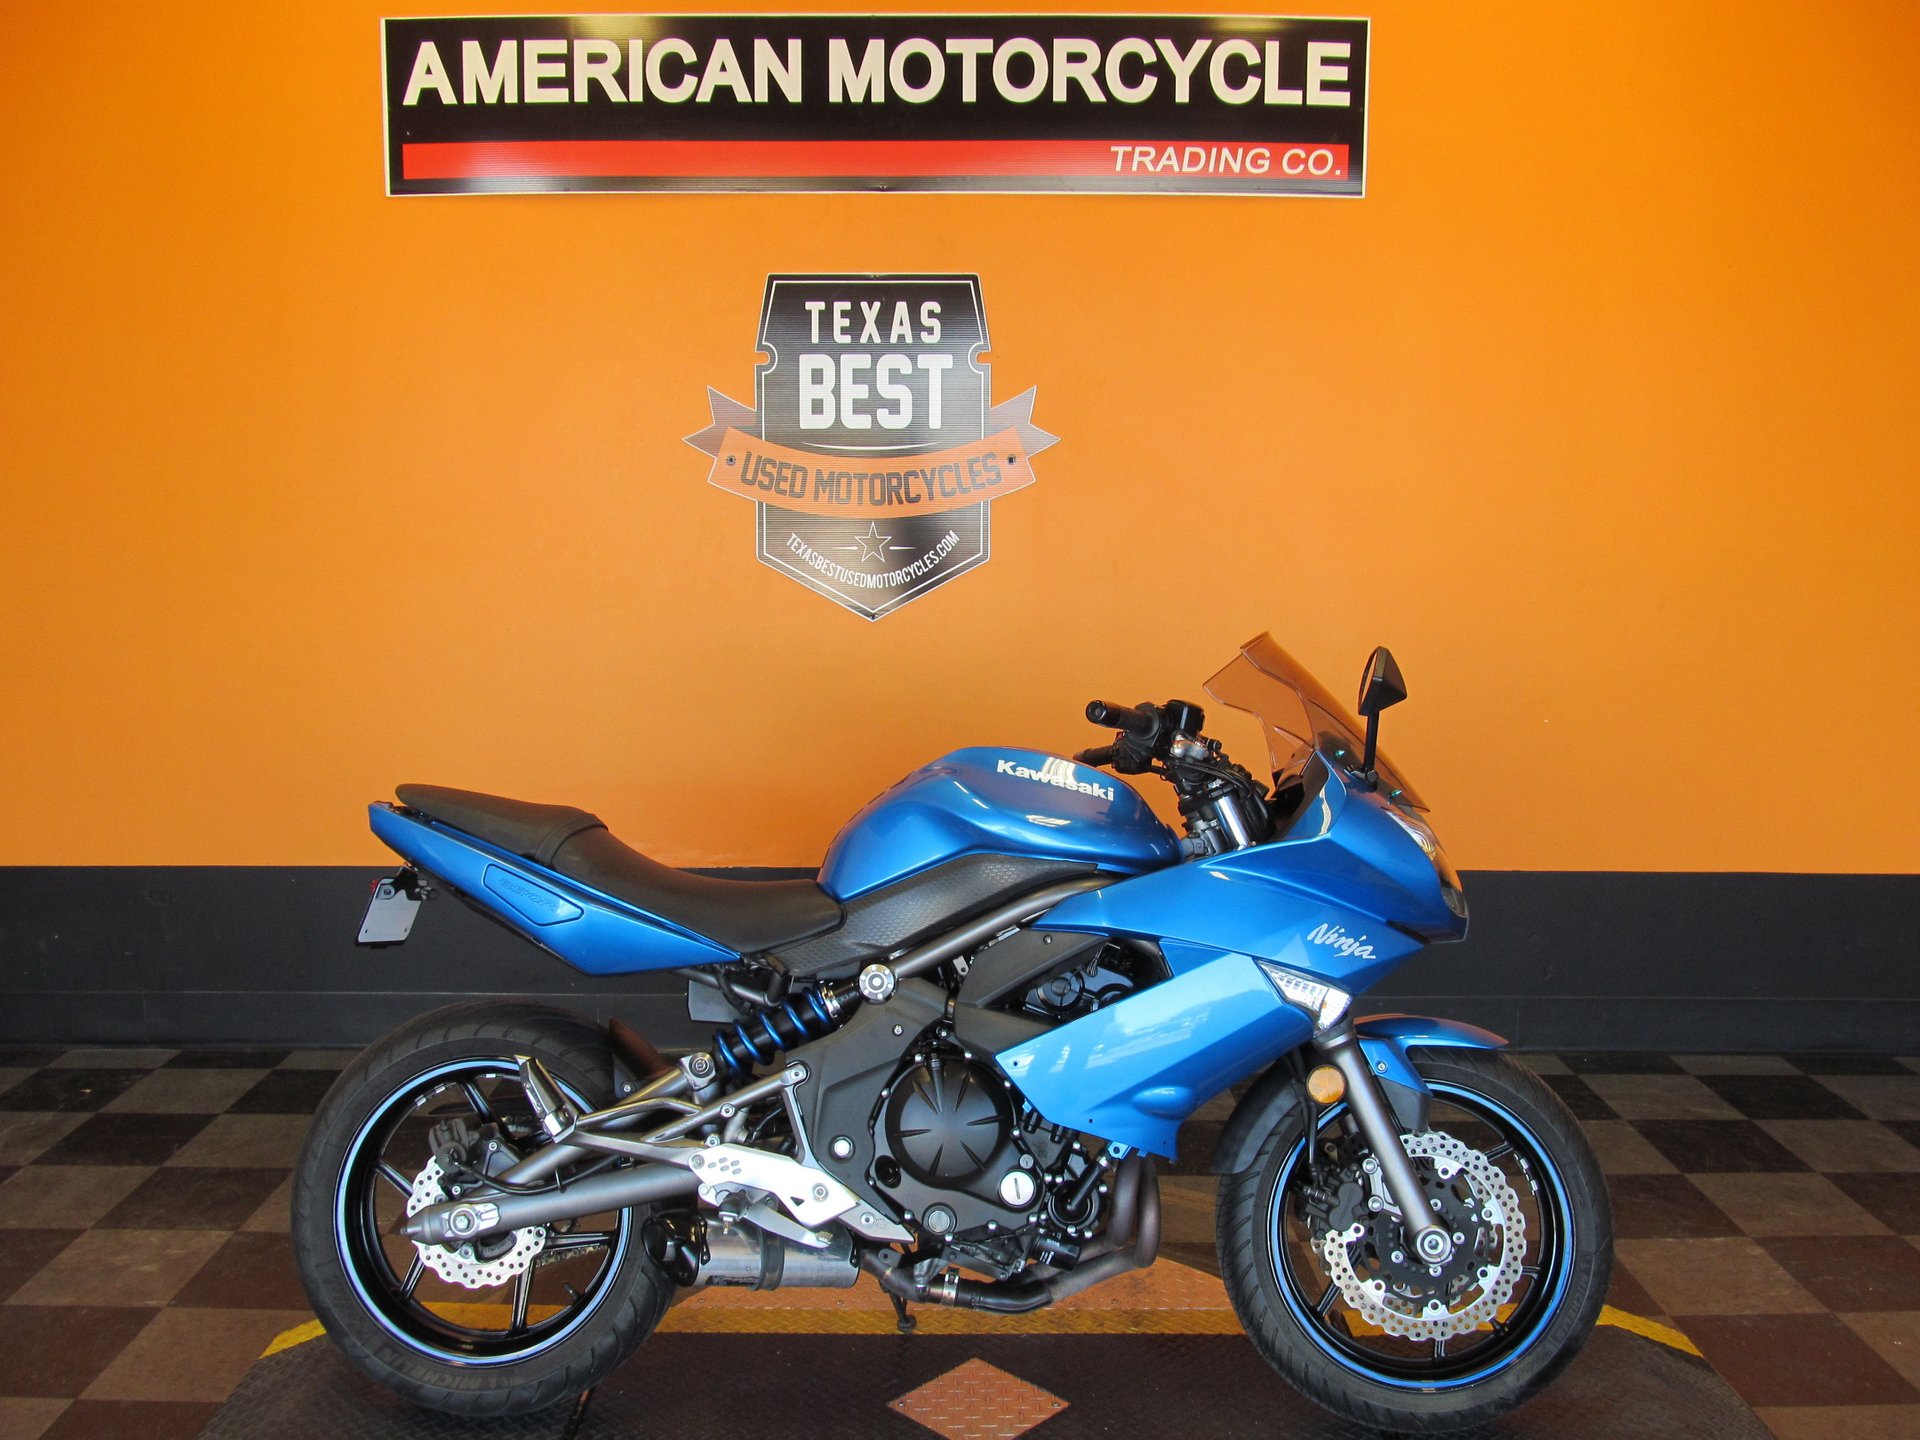 2010 Kawasaki Ninja | American Motorcycle Trading Company - Used Harley  Davidson Motorcycles